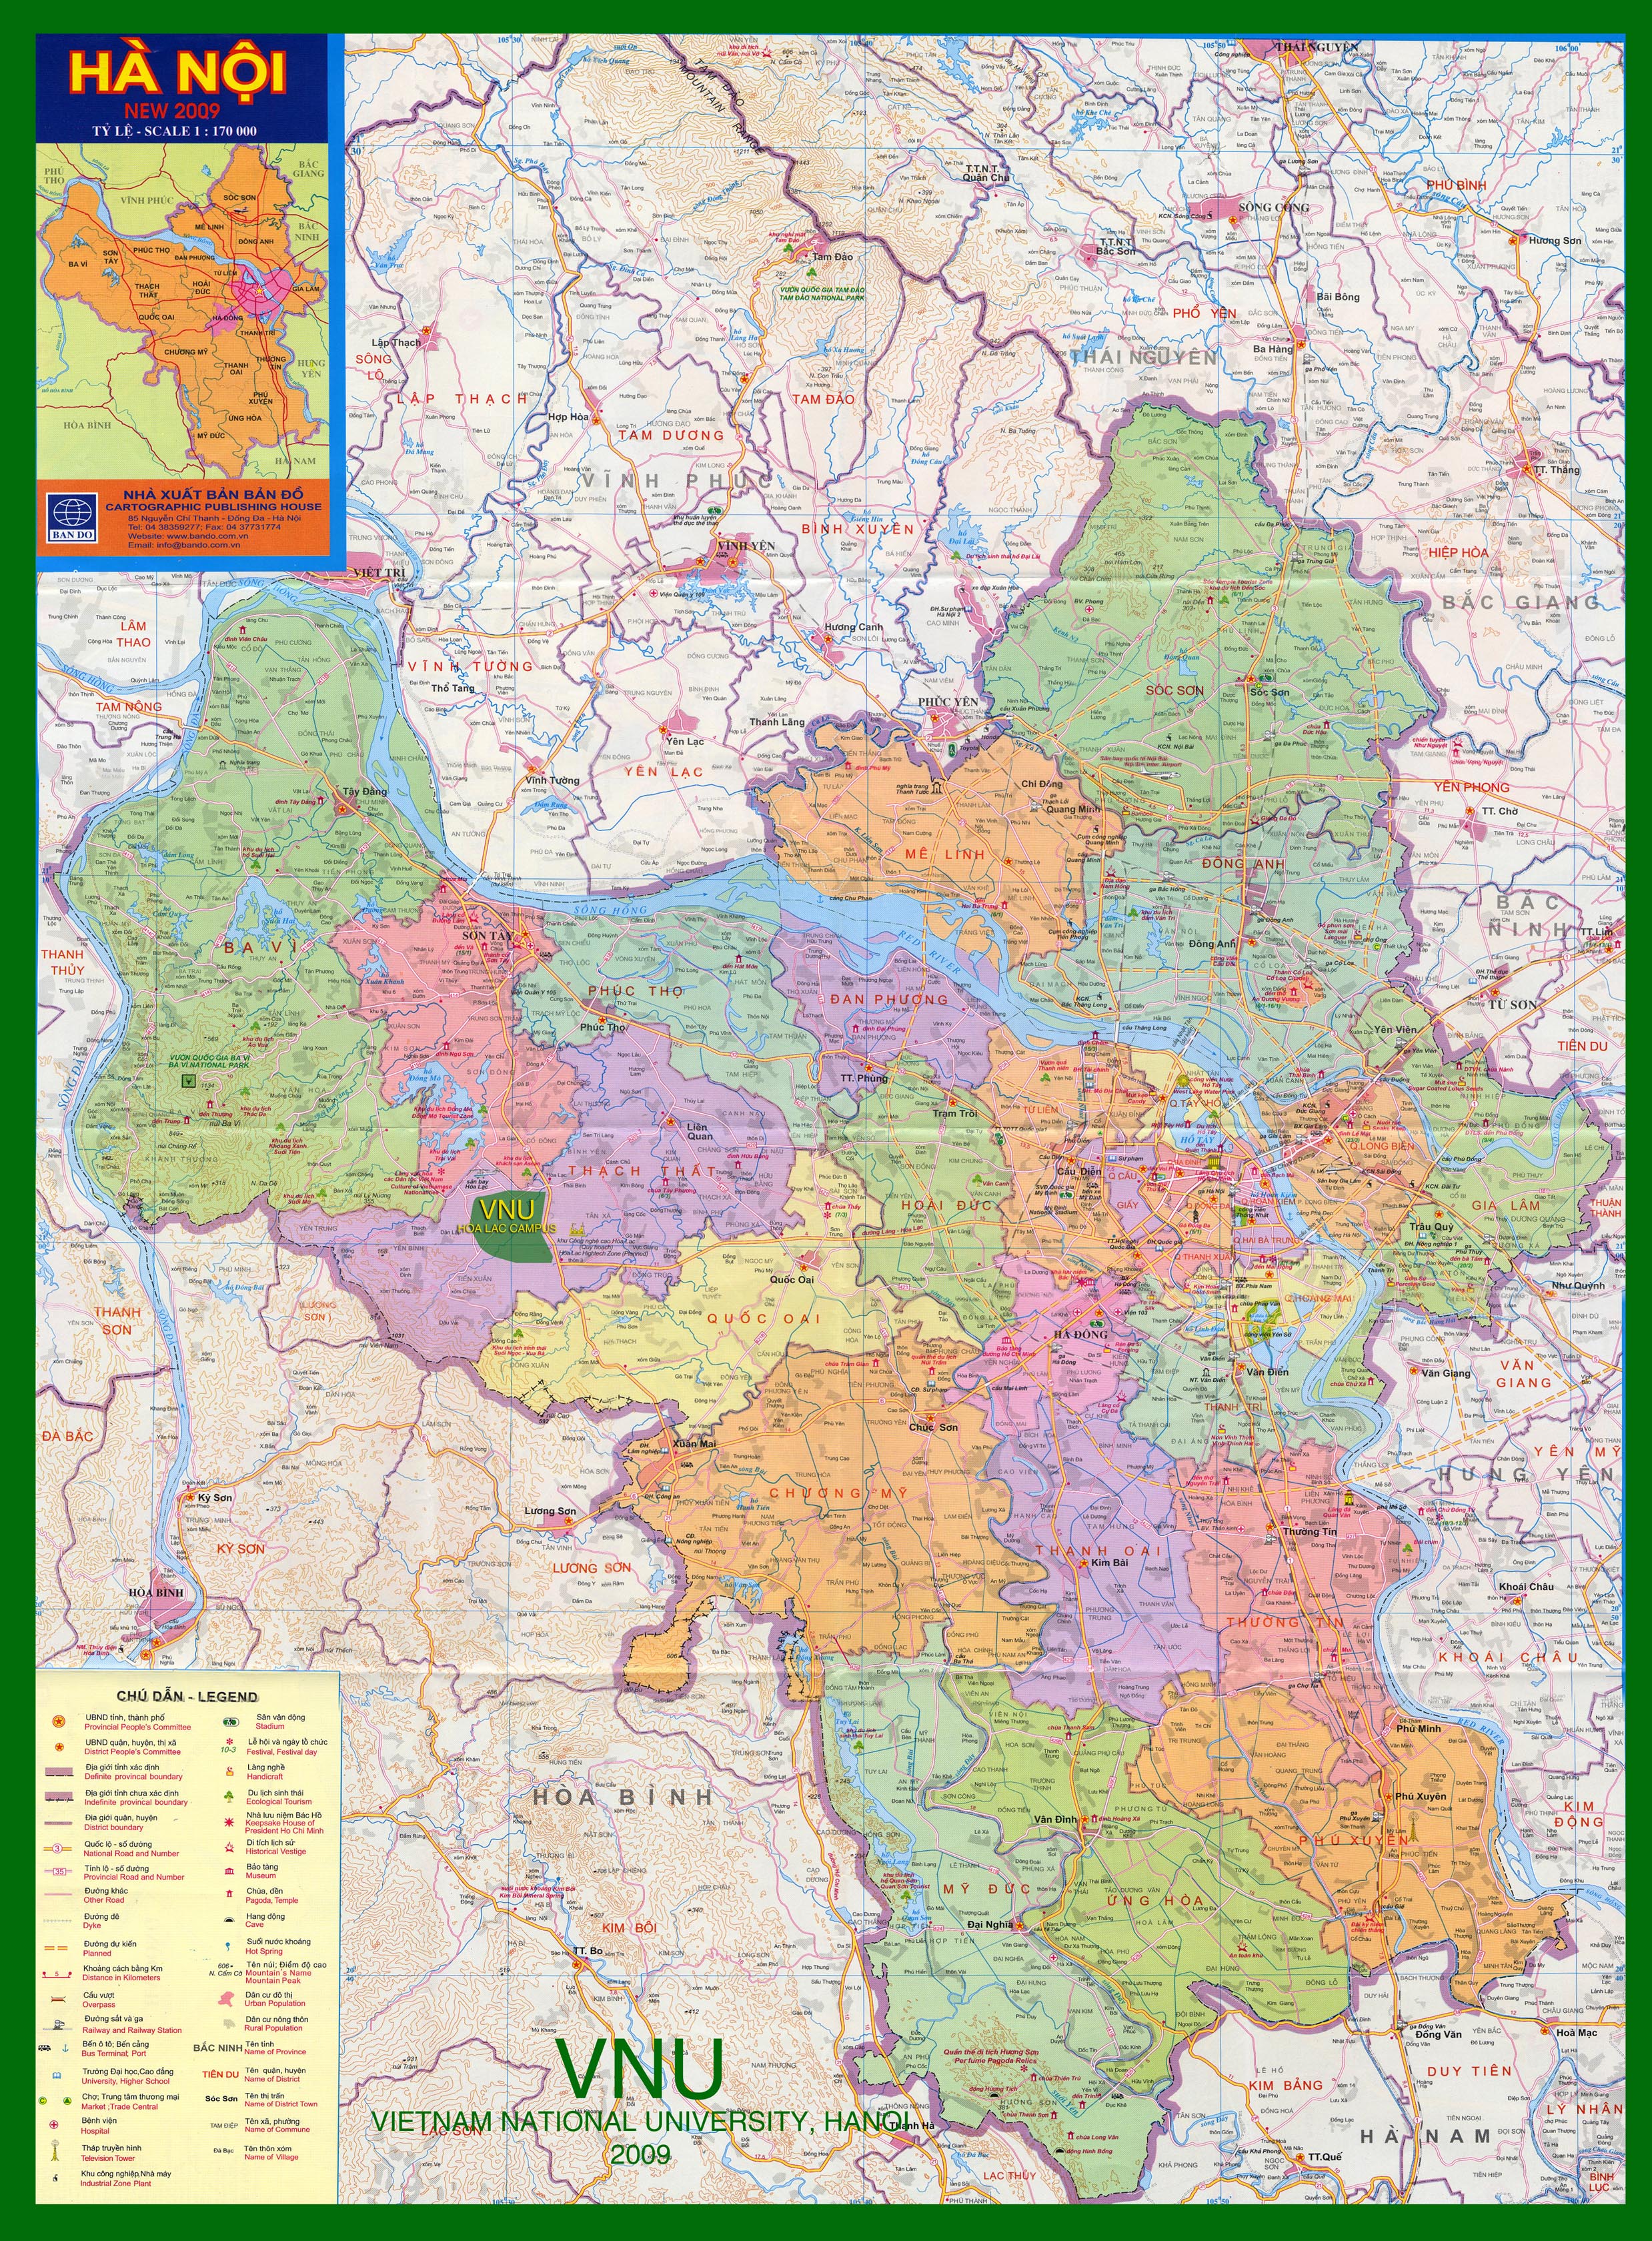 Tự tin khám phá Hà Nội cùng bản đồ quận mới nhất năm 2024! Với thiết kế đơn giản, dễ sử dụng và cập nhật liên tục, bản đồ sẽ giúp bạn chinh phục mọi thử thách trên con đường khám phá Hà Nội với đầy đủ thông tin về các quận mới nhất.